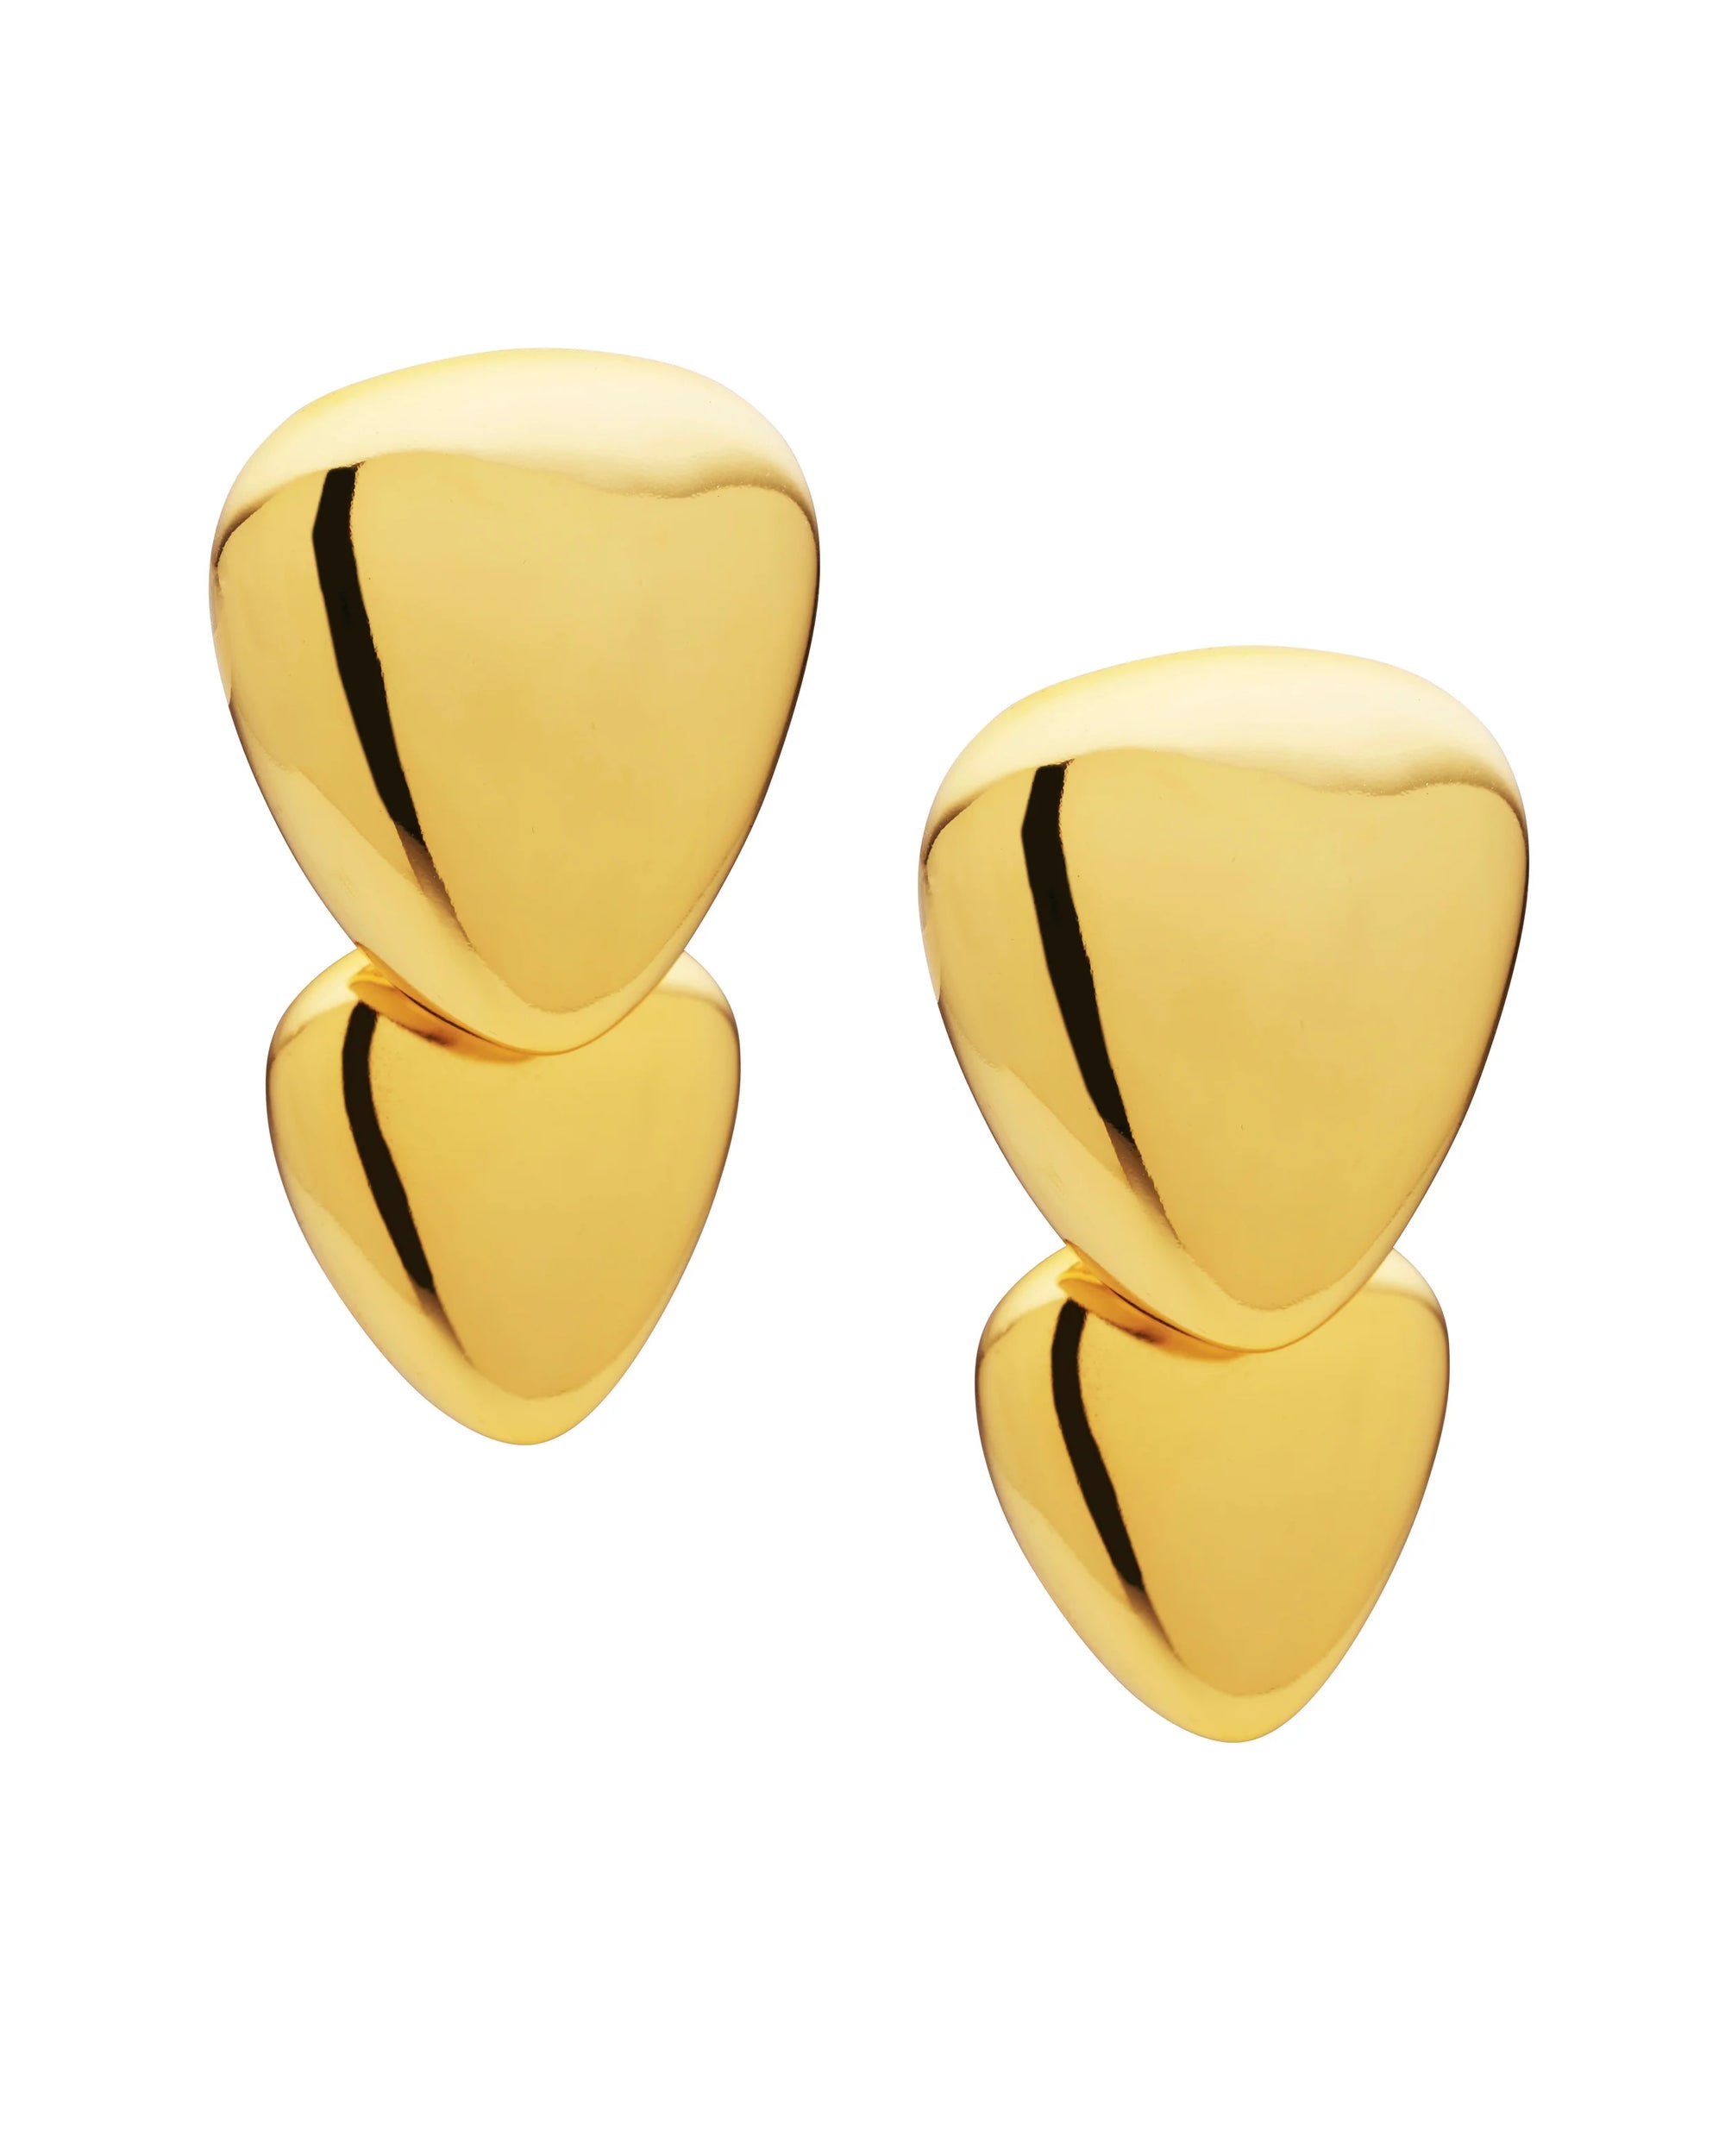 Seychelles Earrings